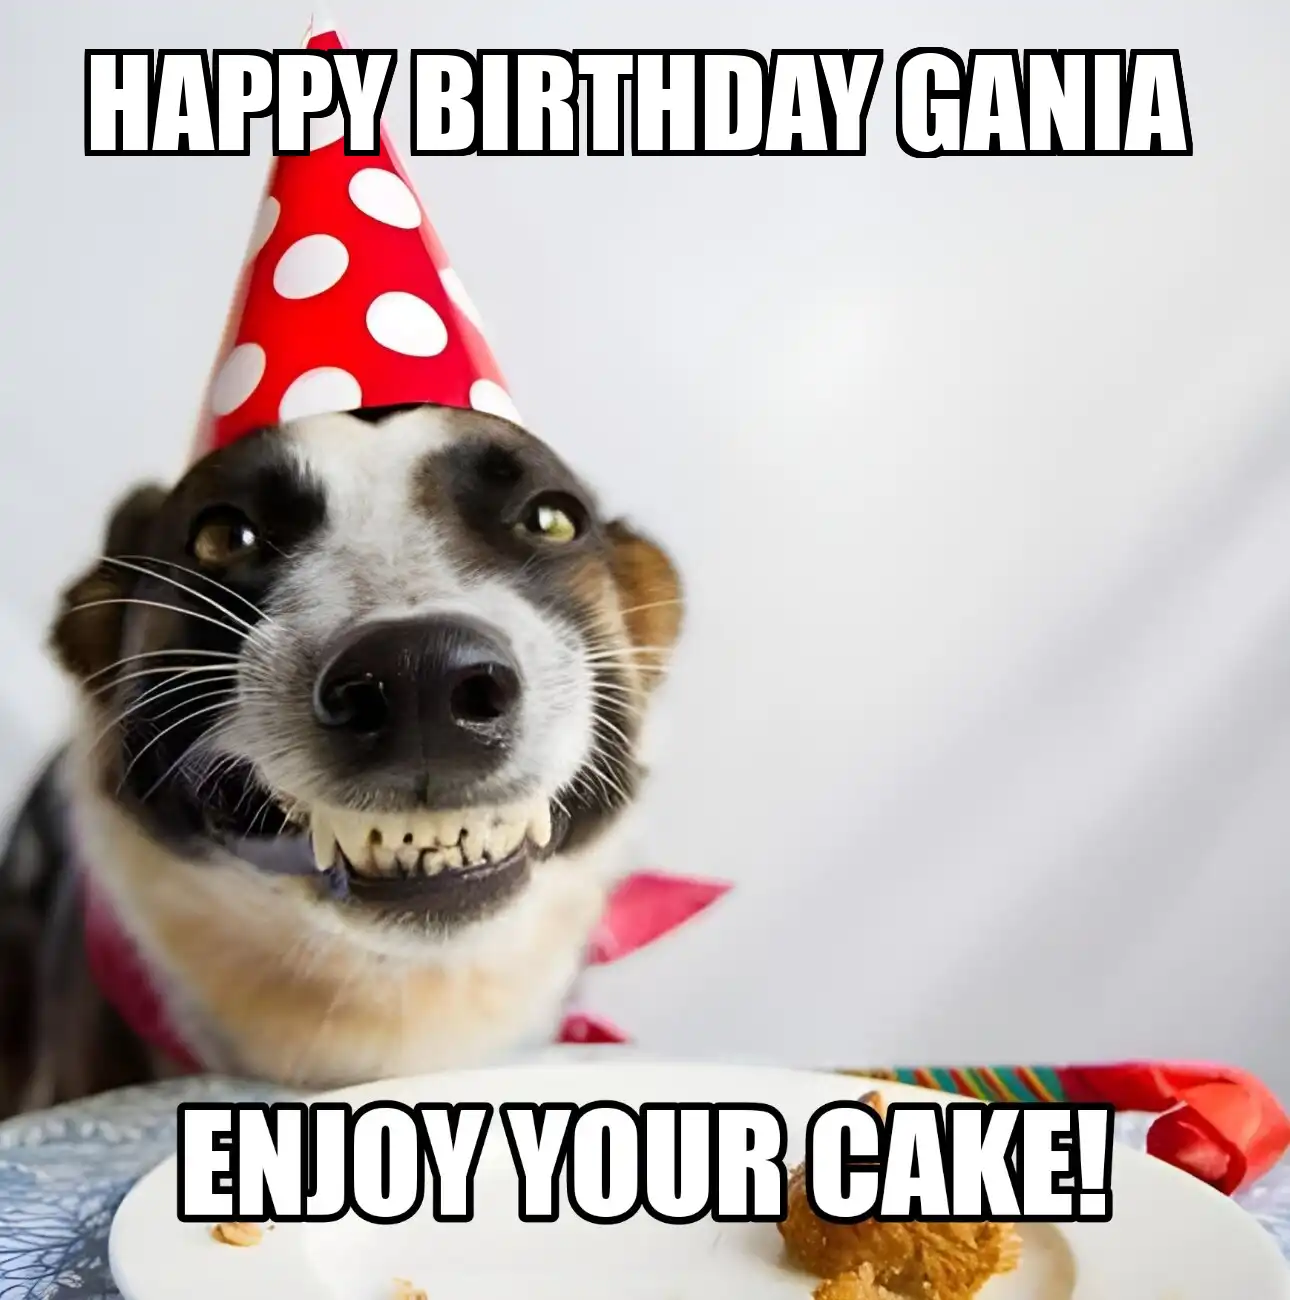 Happy Birthday Gania Enjoy Your Cake Dog Meme